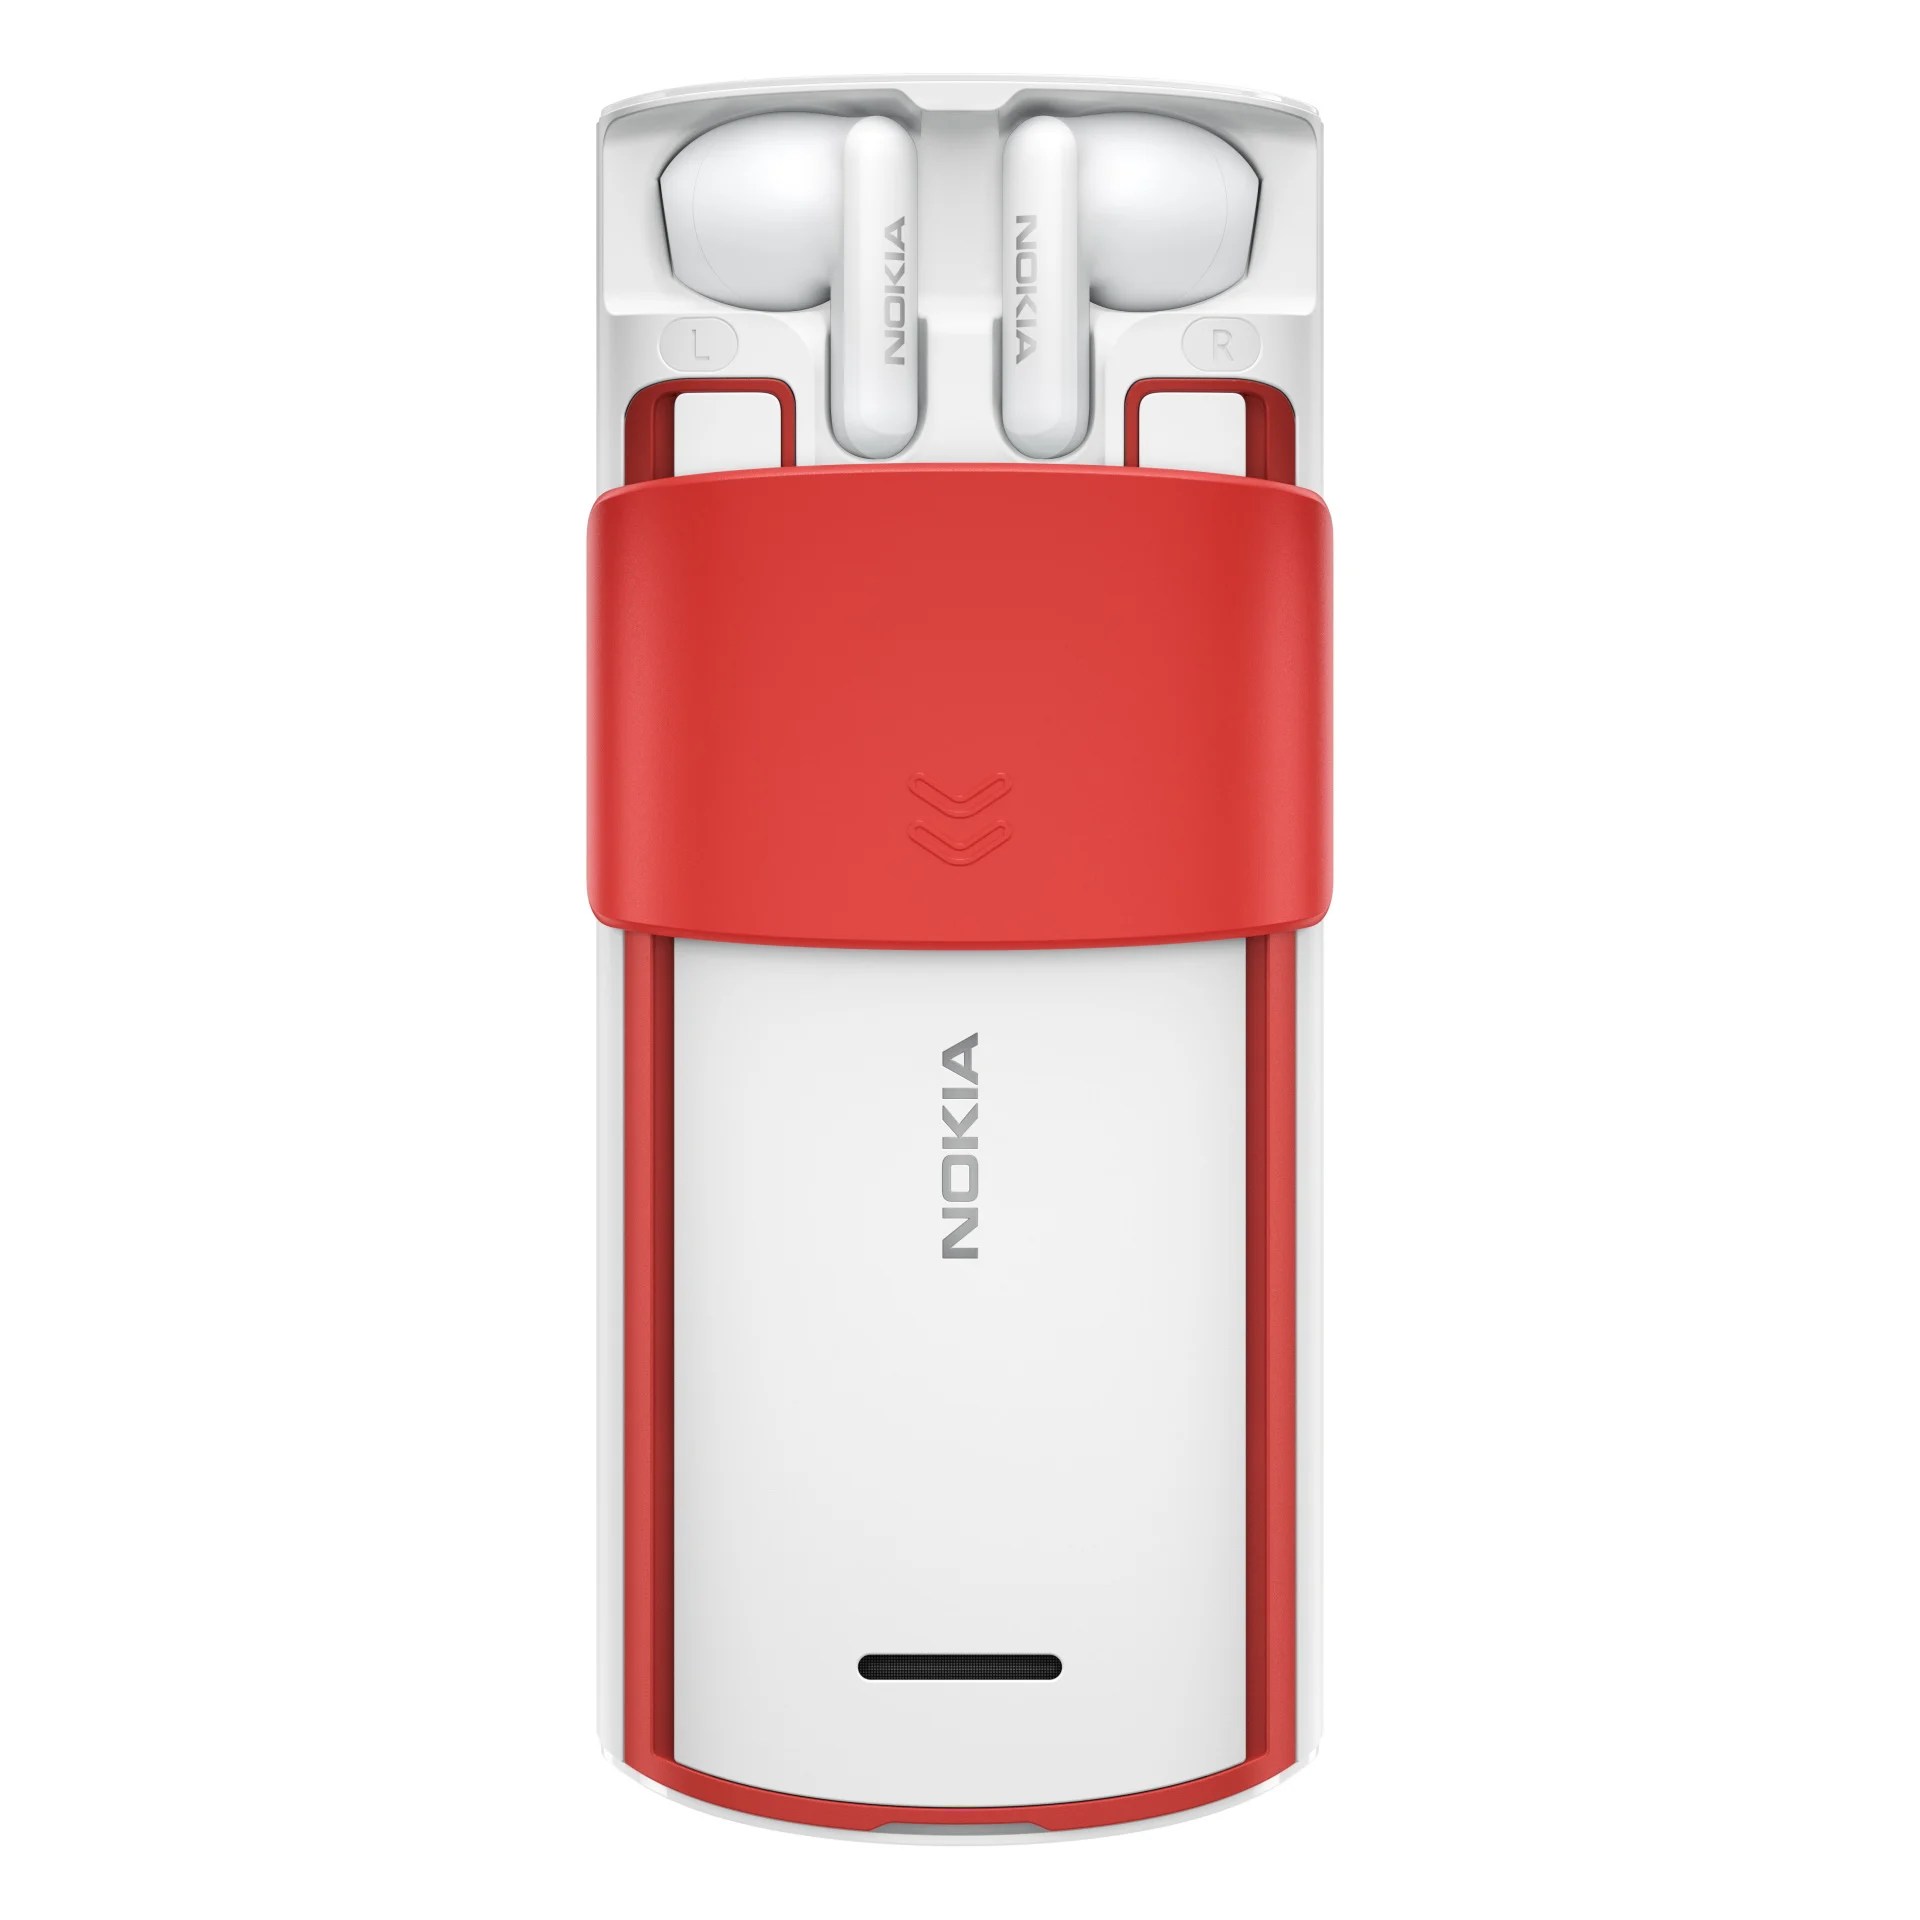 Nokia 5710 XpressAudio WHITE-RED (3)